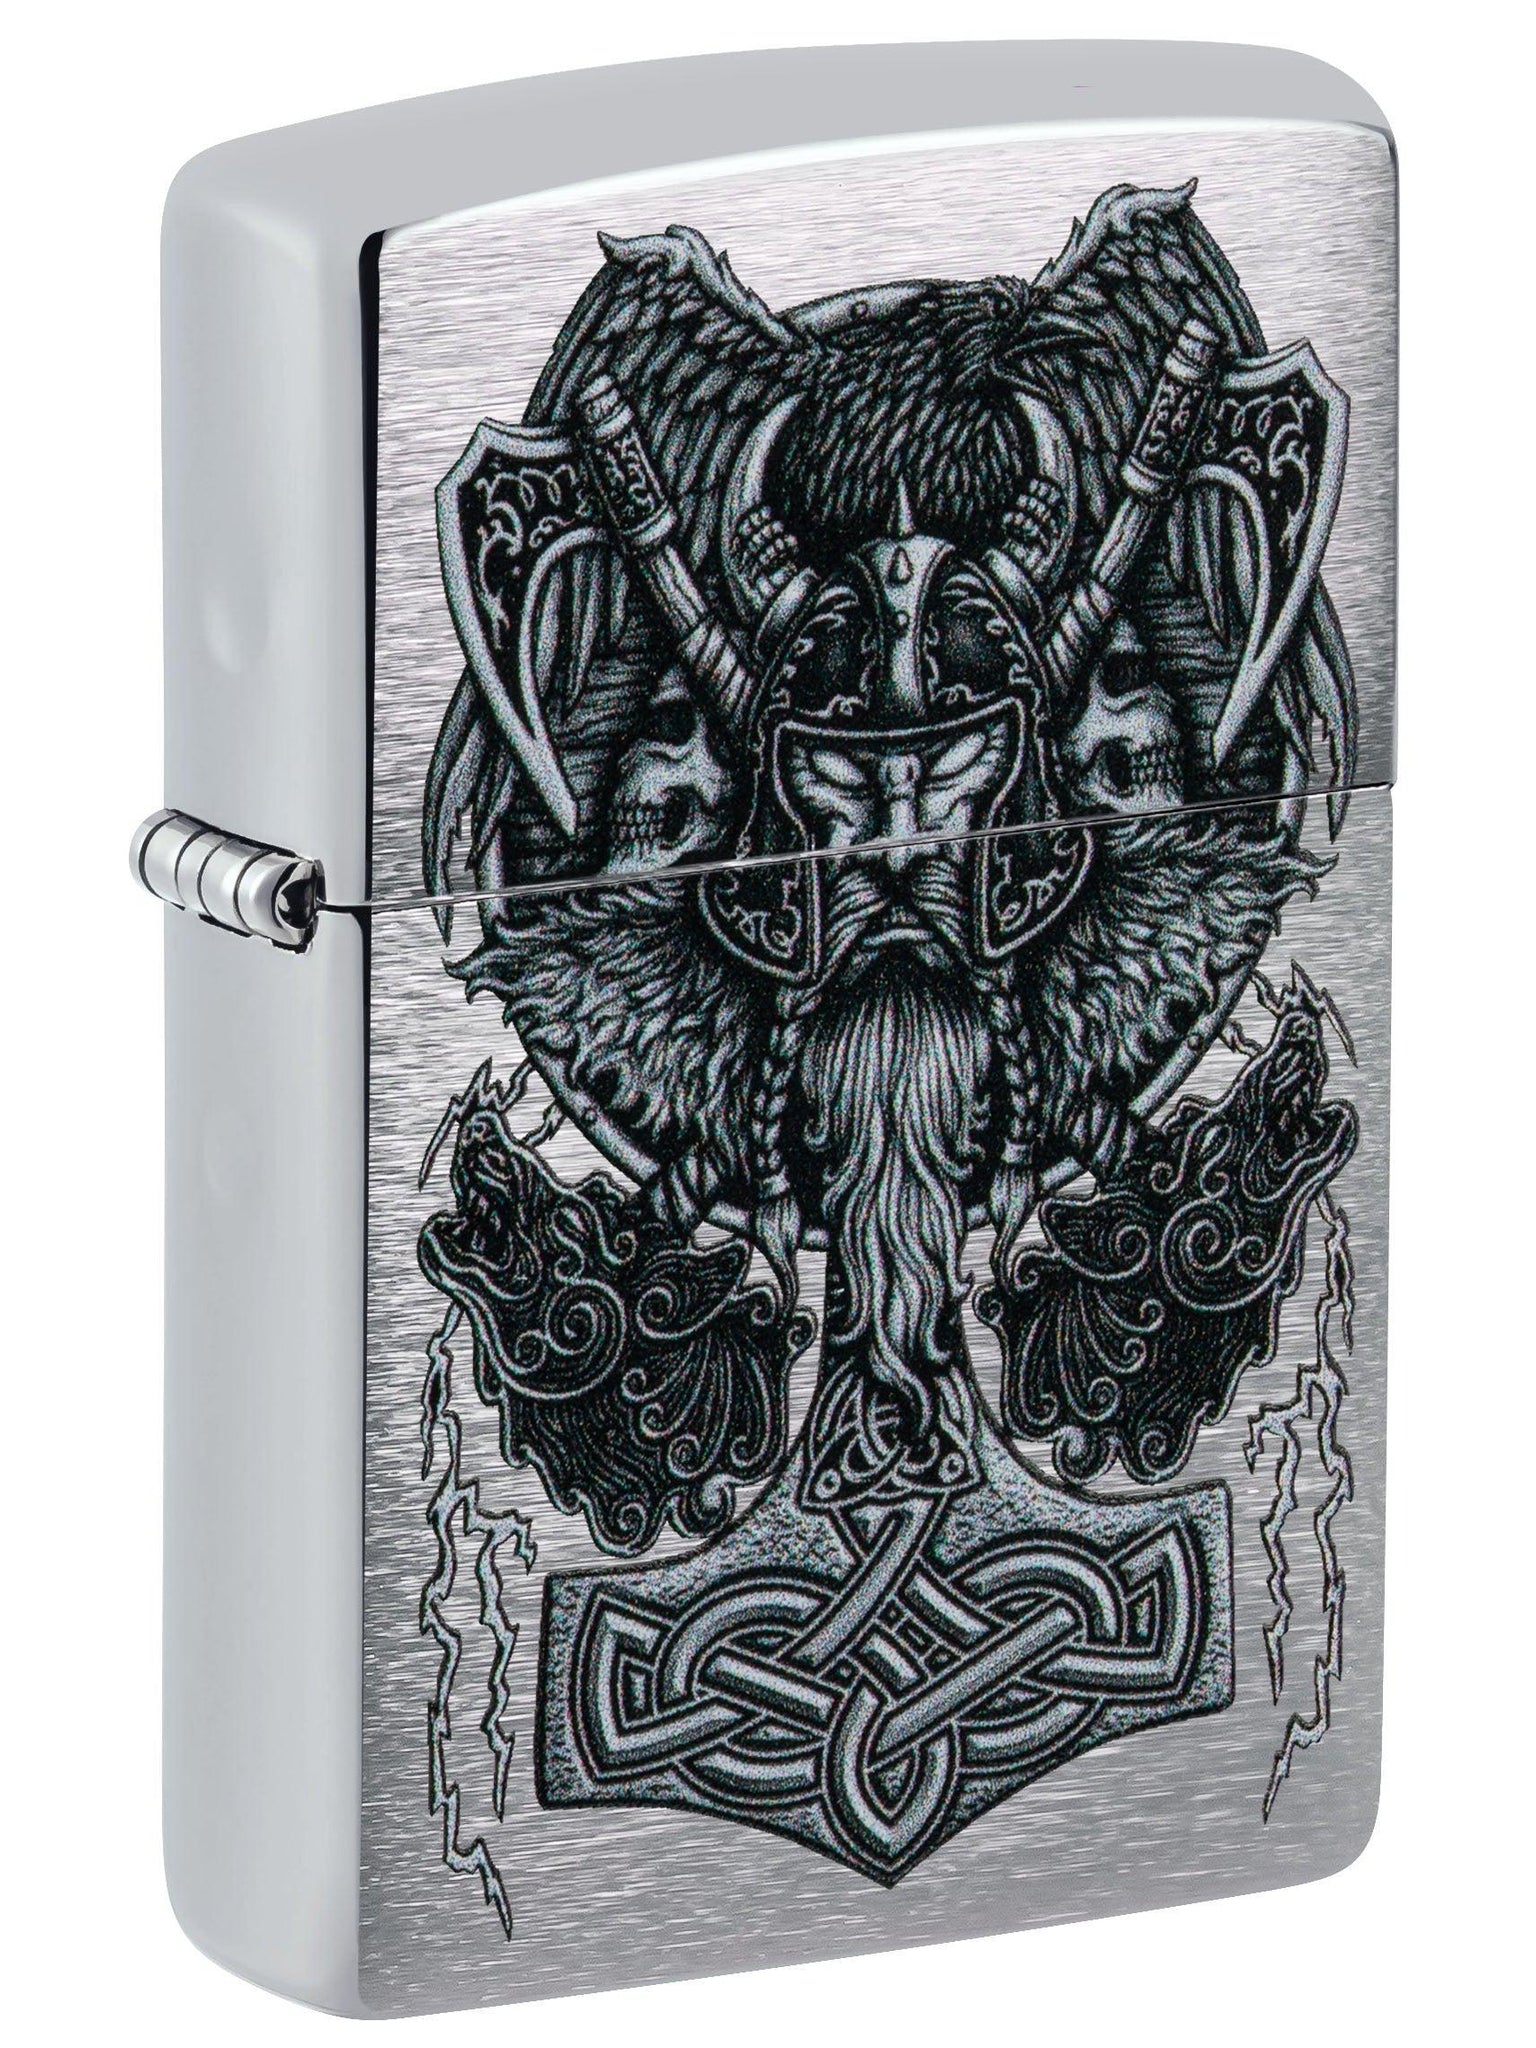 Zippo Lighter: Viking Design - Brushed Chrome 49777